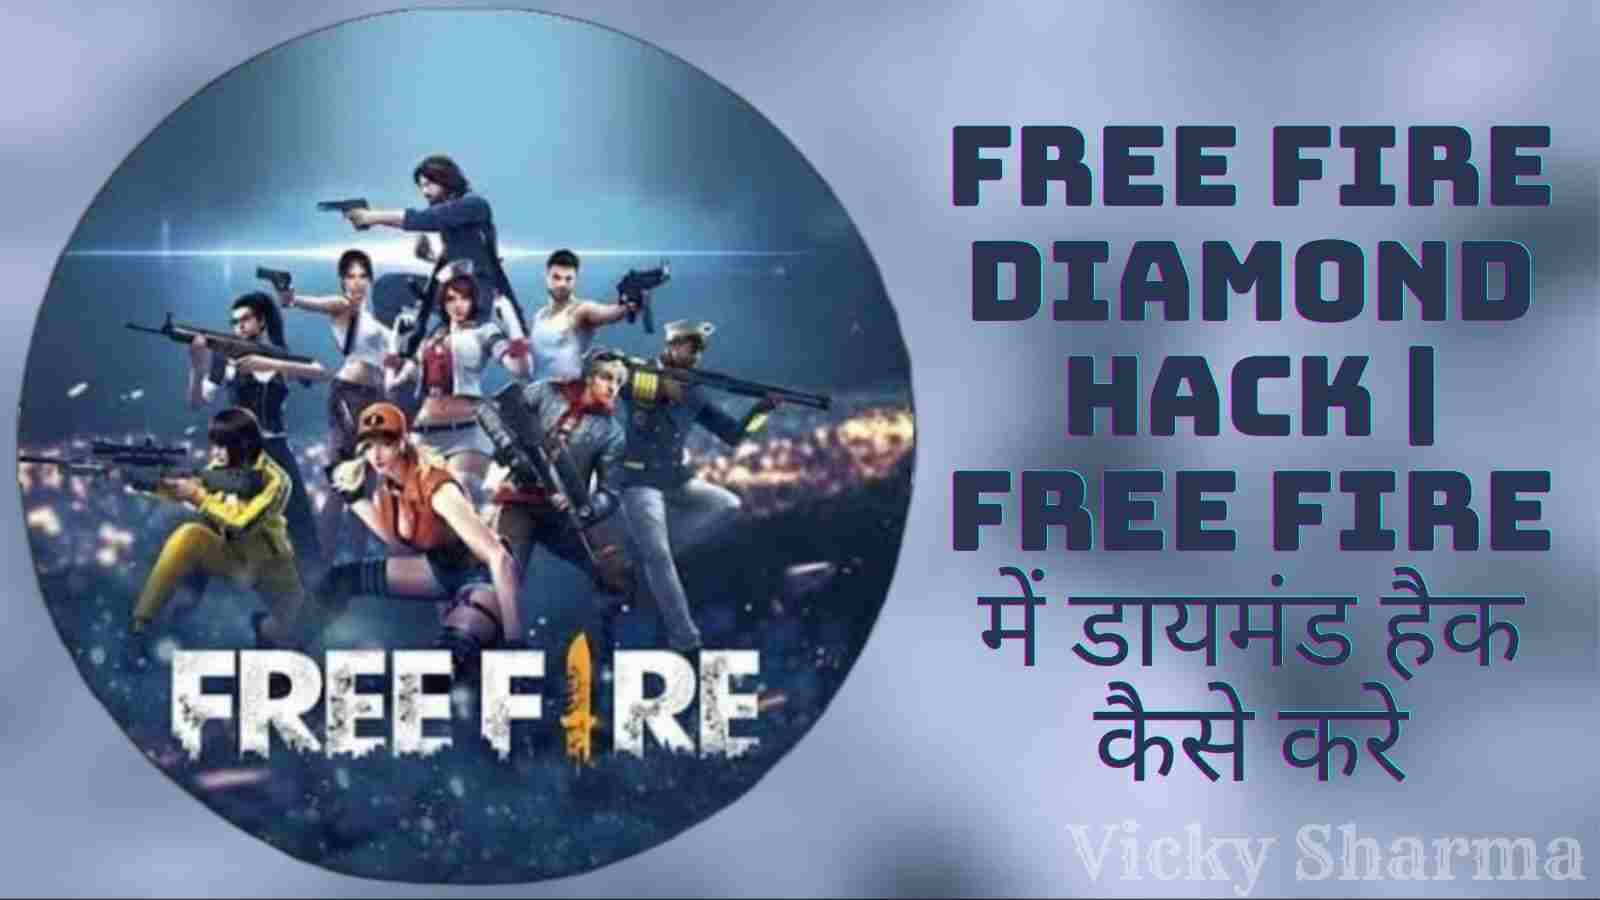 Free Fire Diamond Hack | Free Fire में डायमंड हैक कैसे करे